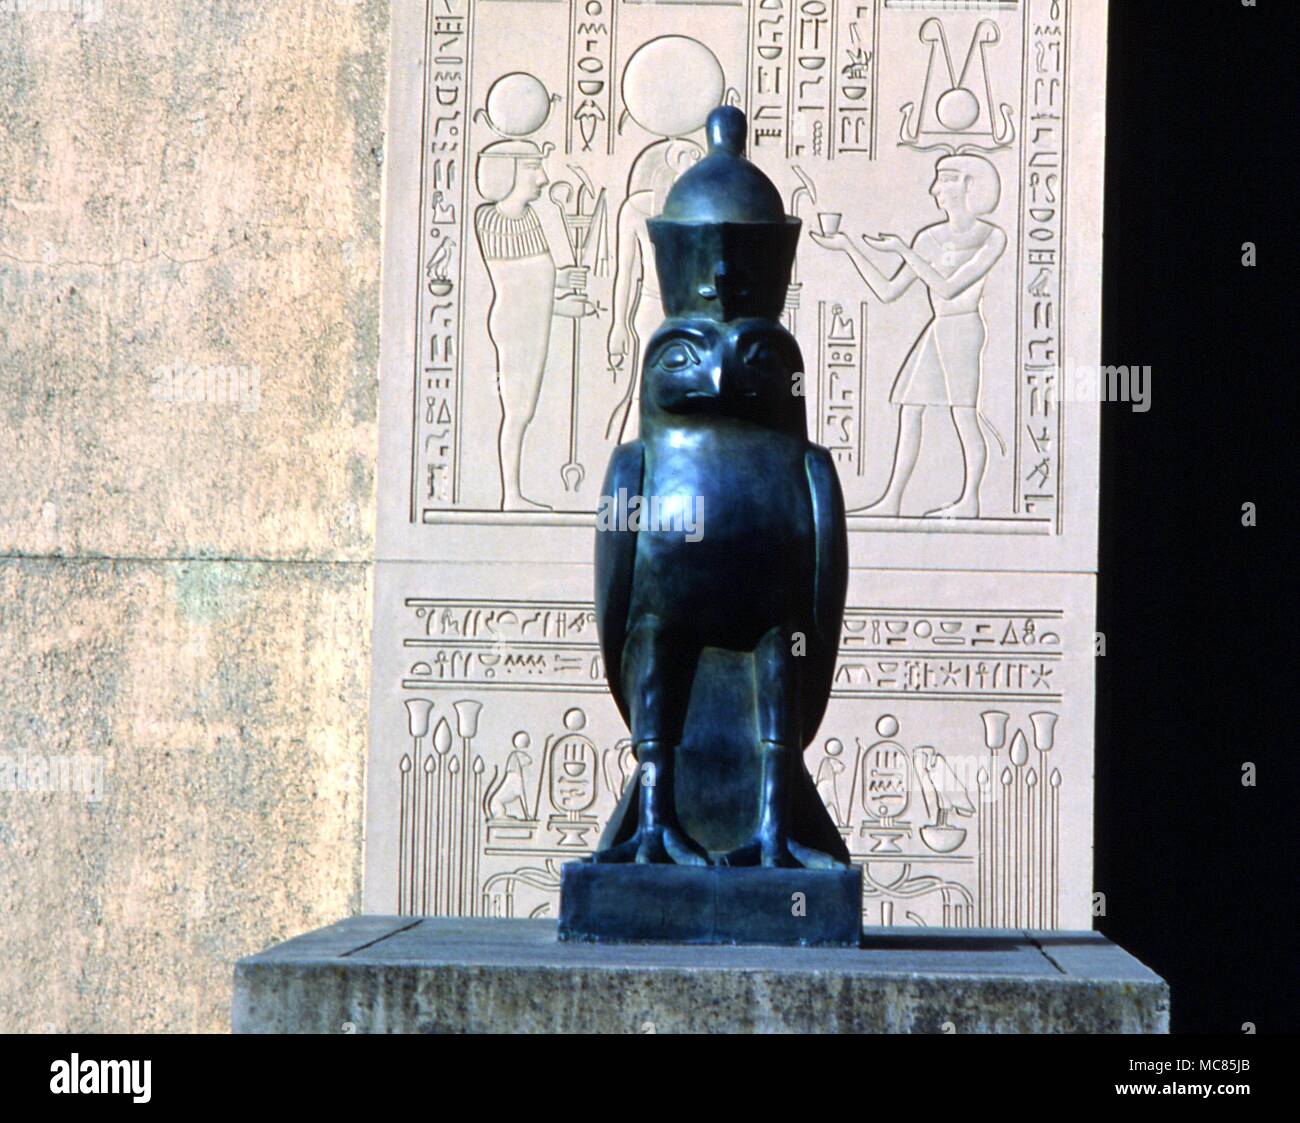 Horus come un falco. Statua di bronzo contro l'ingresso principale agli uffici del Parco dei Rosacroce (A.M.O.R.C.) a San Jose, California. Foto Stock